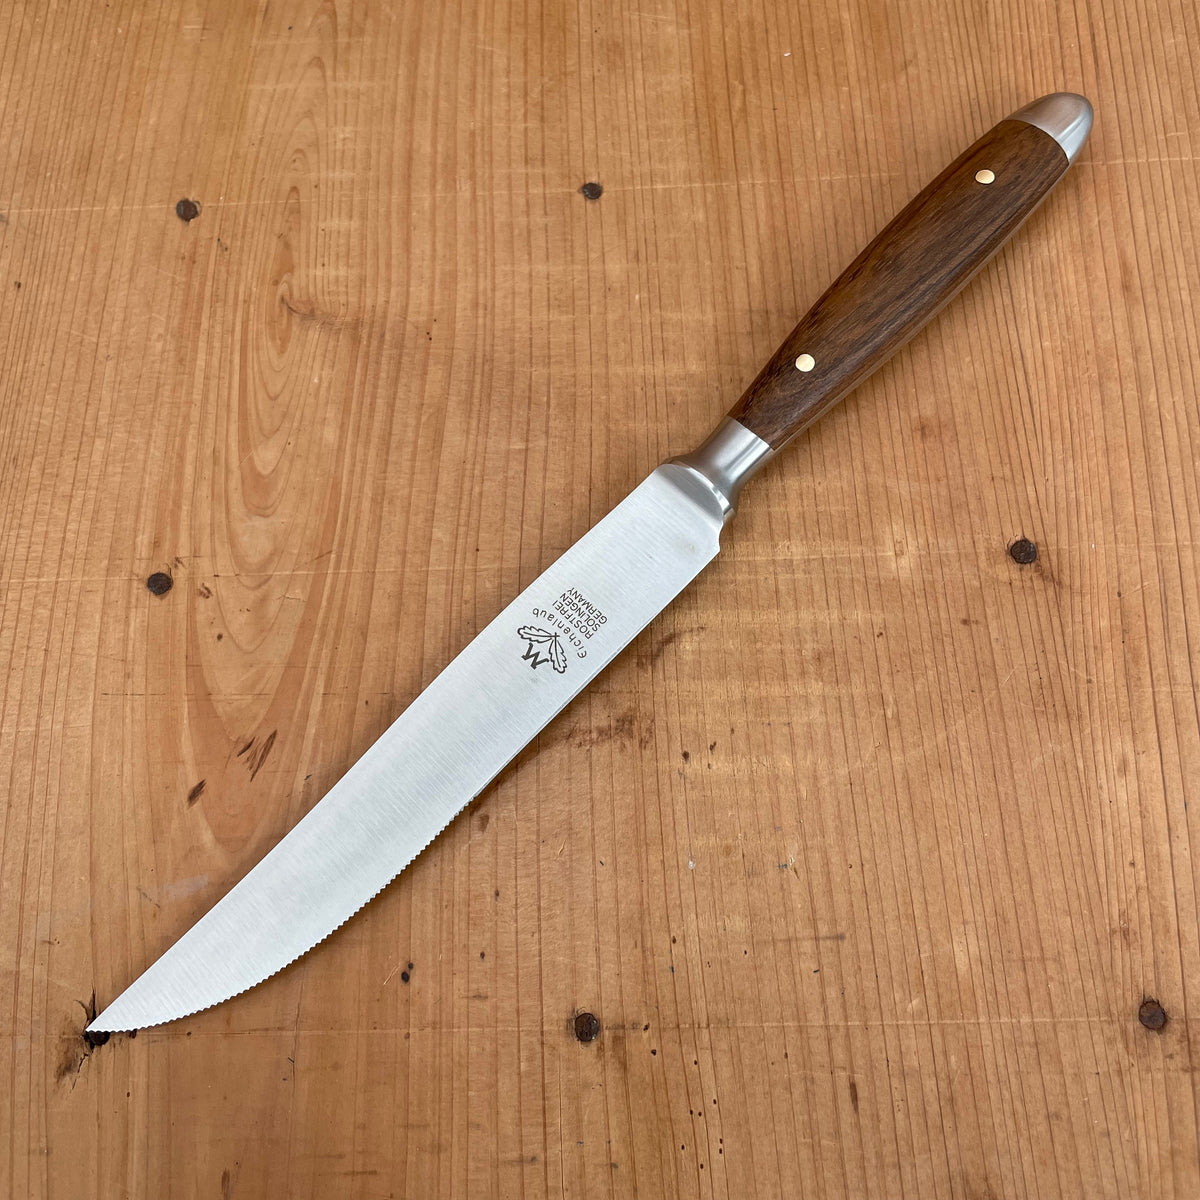 Eichenlaub Forged Tableware Steak Knife Set Stainless Dark Oak Matte Handles - 6 Pieces